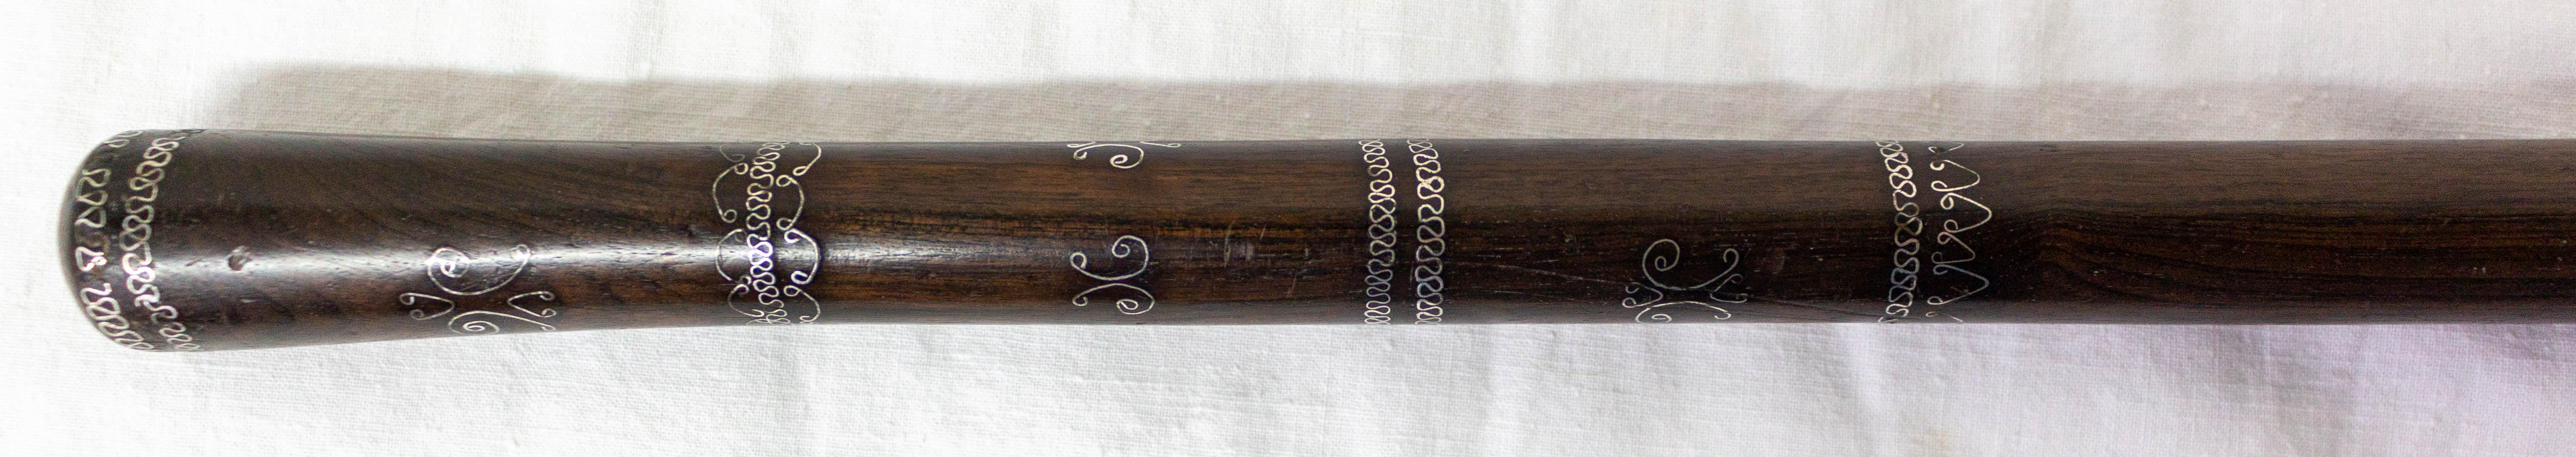 Canne ou bâton de marche français, vers 1900
Acajou et argent

Expédition :
2/2/87 cm 0.2 kg.